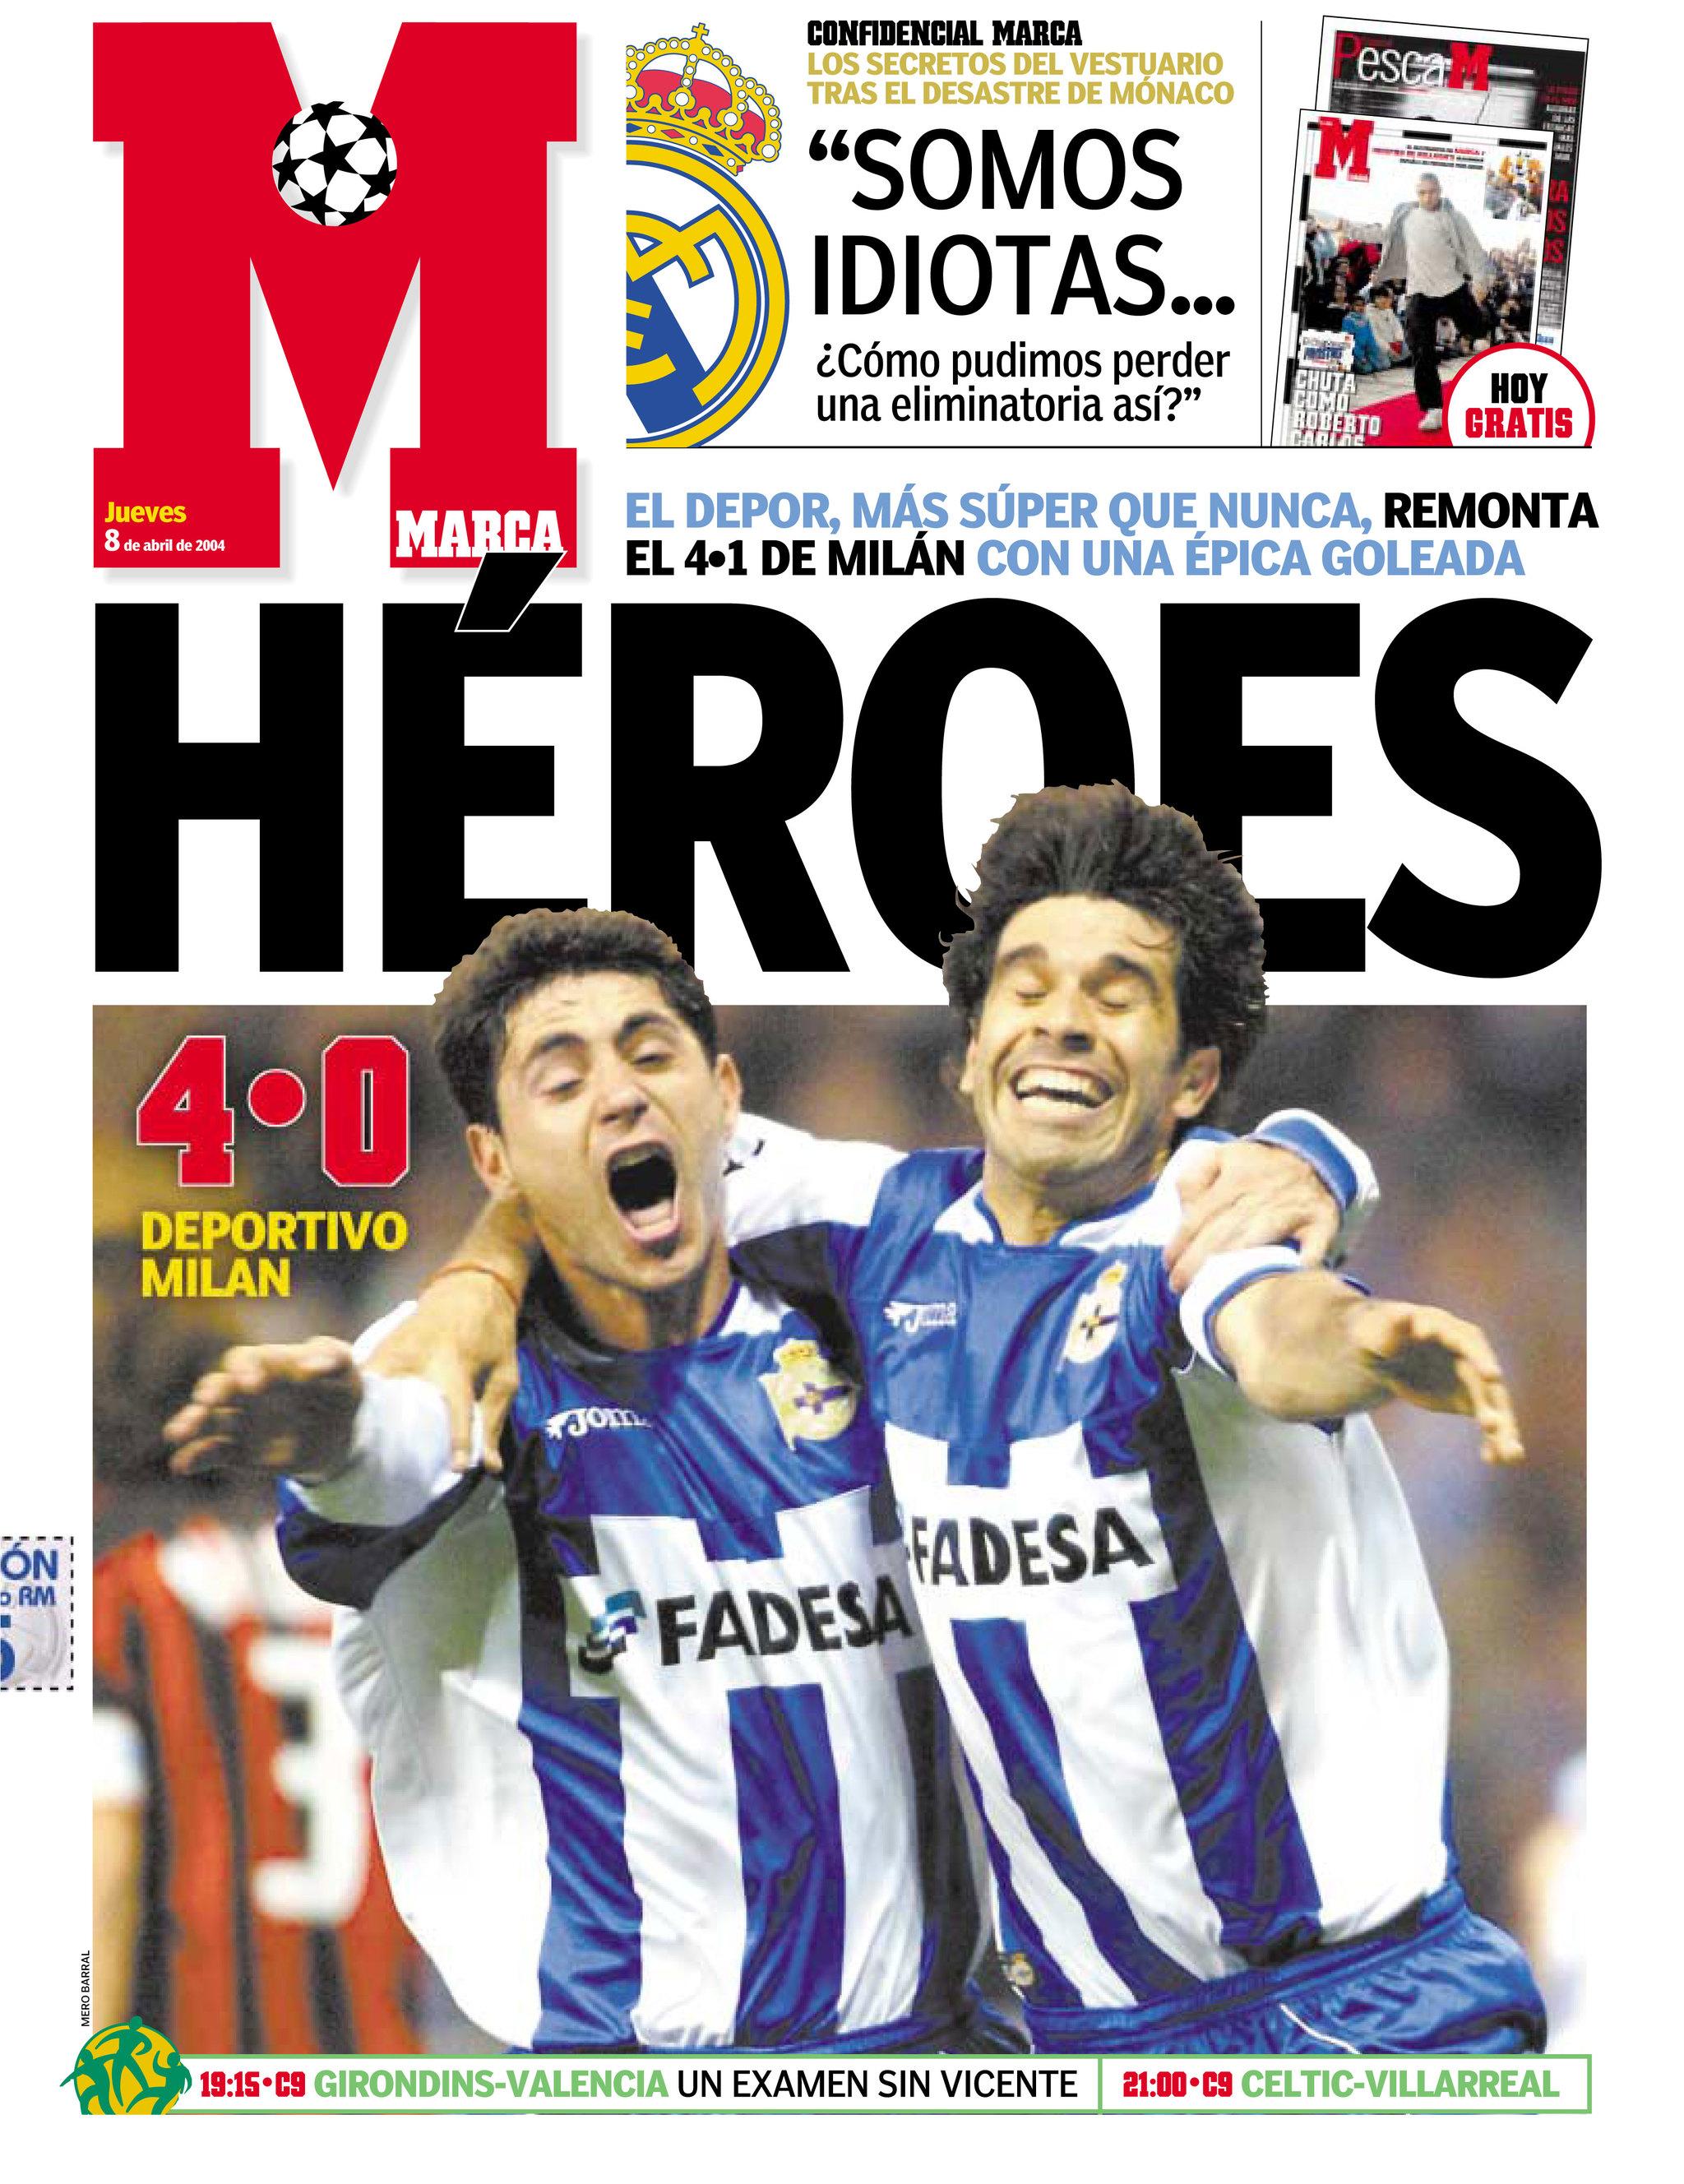 La portada del diario Marca del día siguiente al partido. (Fuente: Marca)